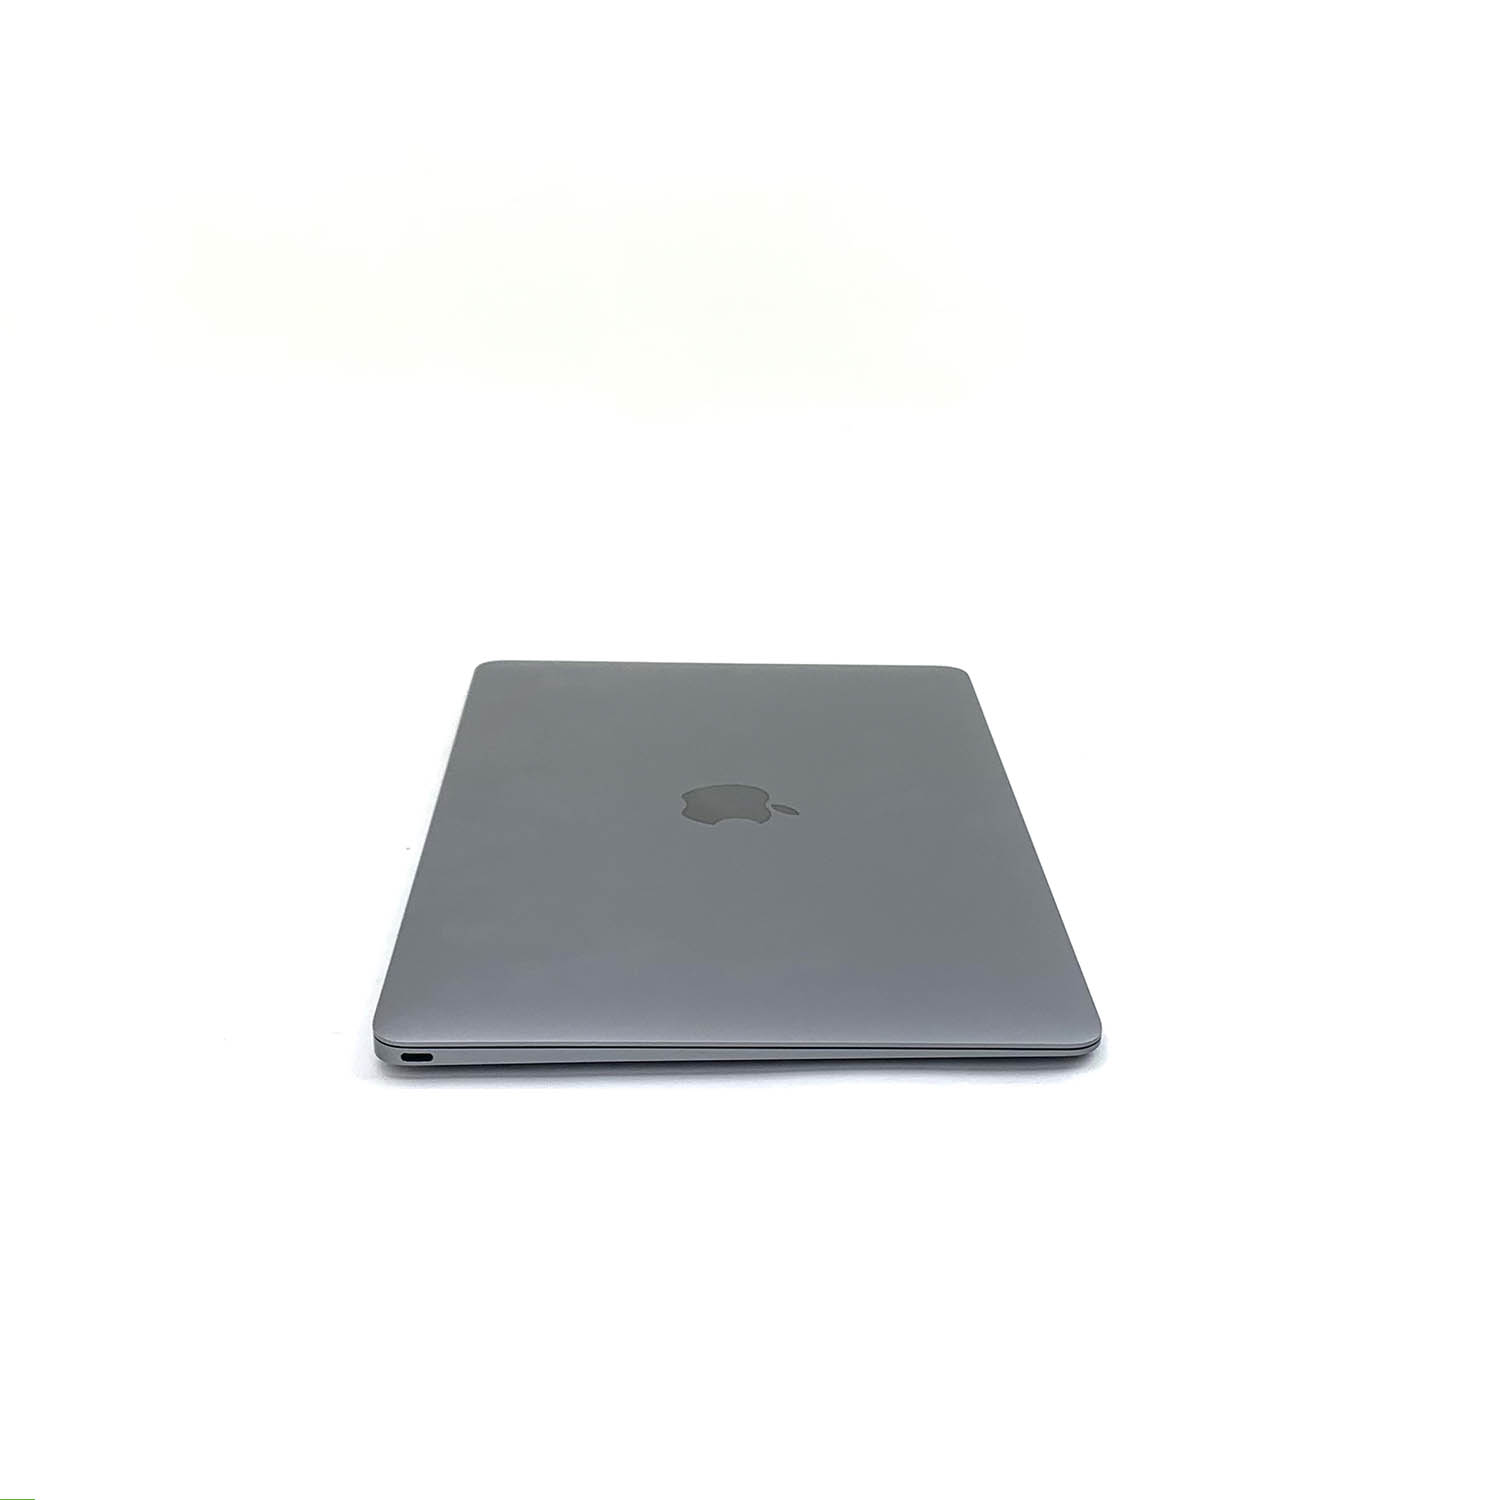 Macbook 12 Space Gray Core M 1.2Ghz 8GB 256GB SSD MNYF2LL/A Seminovo